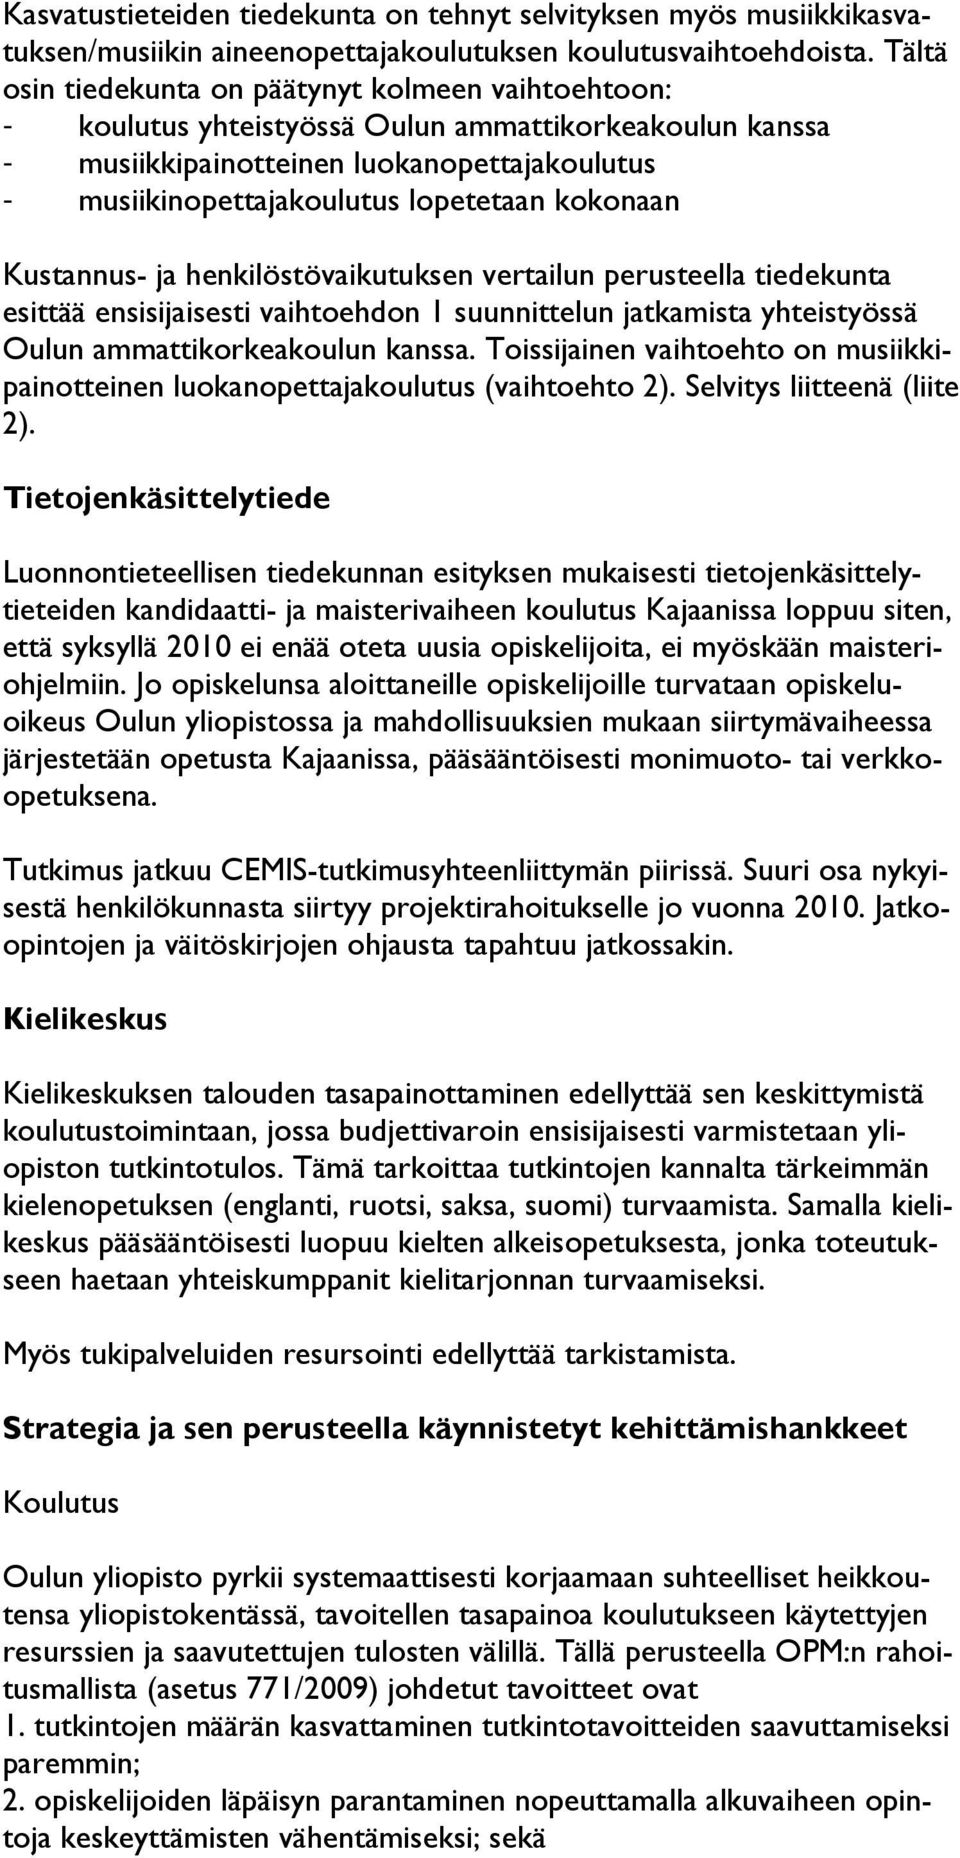 kokonaan Kustannus- ja henkilöstövaikutuksen vertailun perusteella tiedekunta esittää ensisijaisesti vaihtoehdon 1 suunnittelun jatkamista yhteistyössä Oulun ammattikorkeakoulun kanssa.